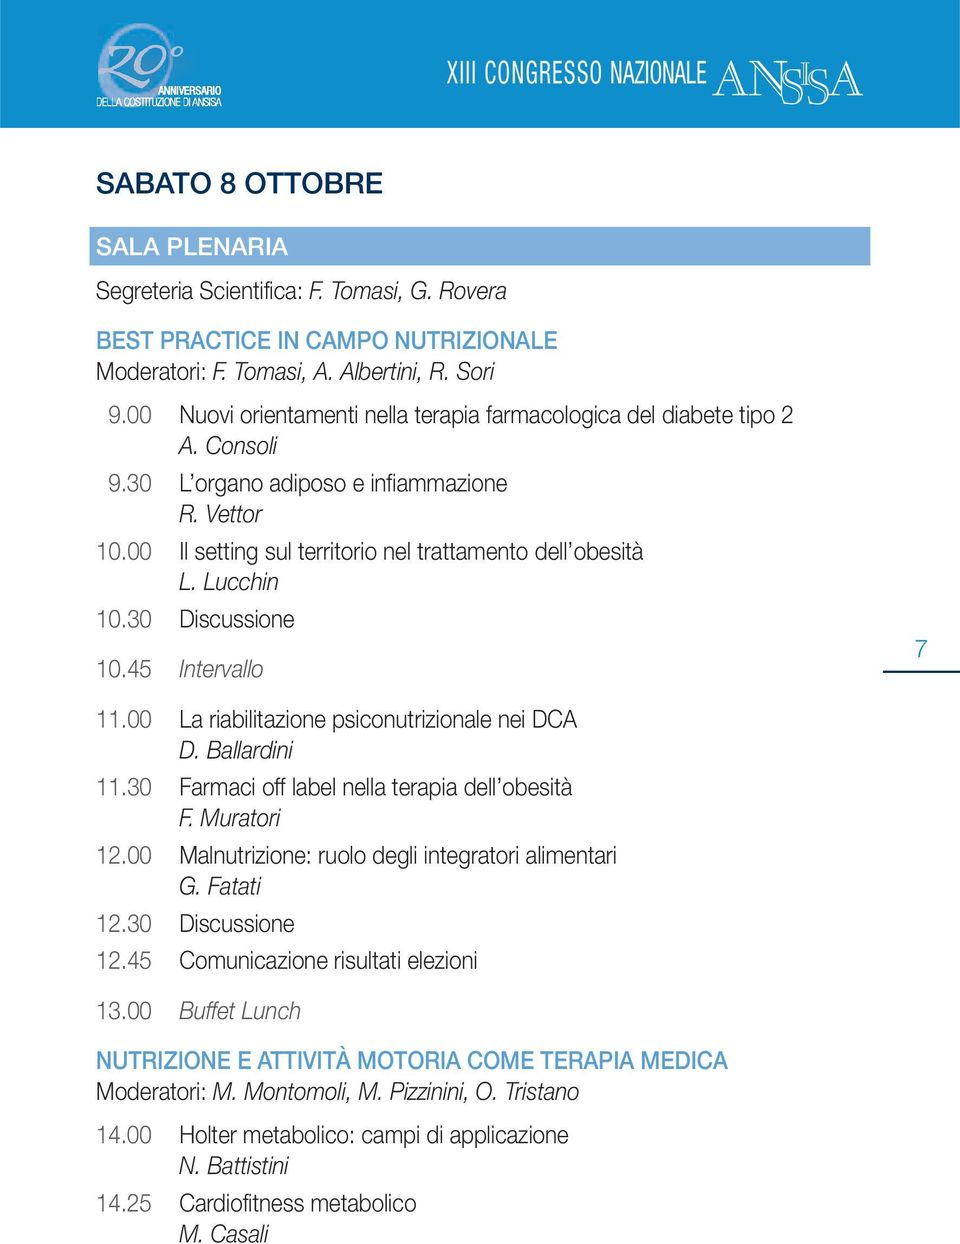 Lucchin 10.30 Discussione 10.45 Intervallo 7 11.00 La riabilitazione psiconutrizionale nei DCA D. Ballardini 11.30 Farmaci off label nella terapia dell obesità F. Muratori 12.